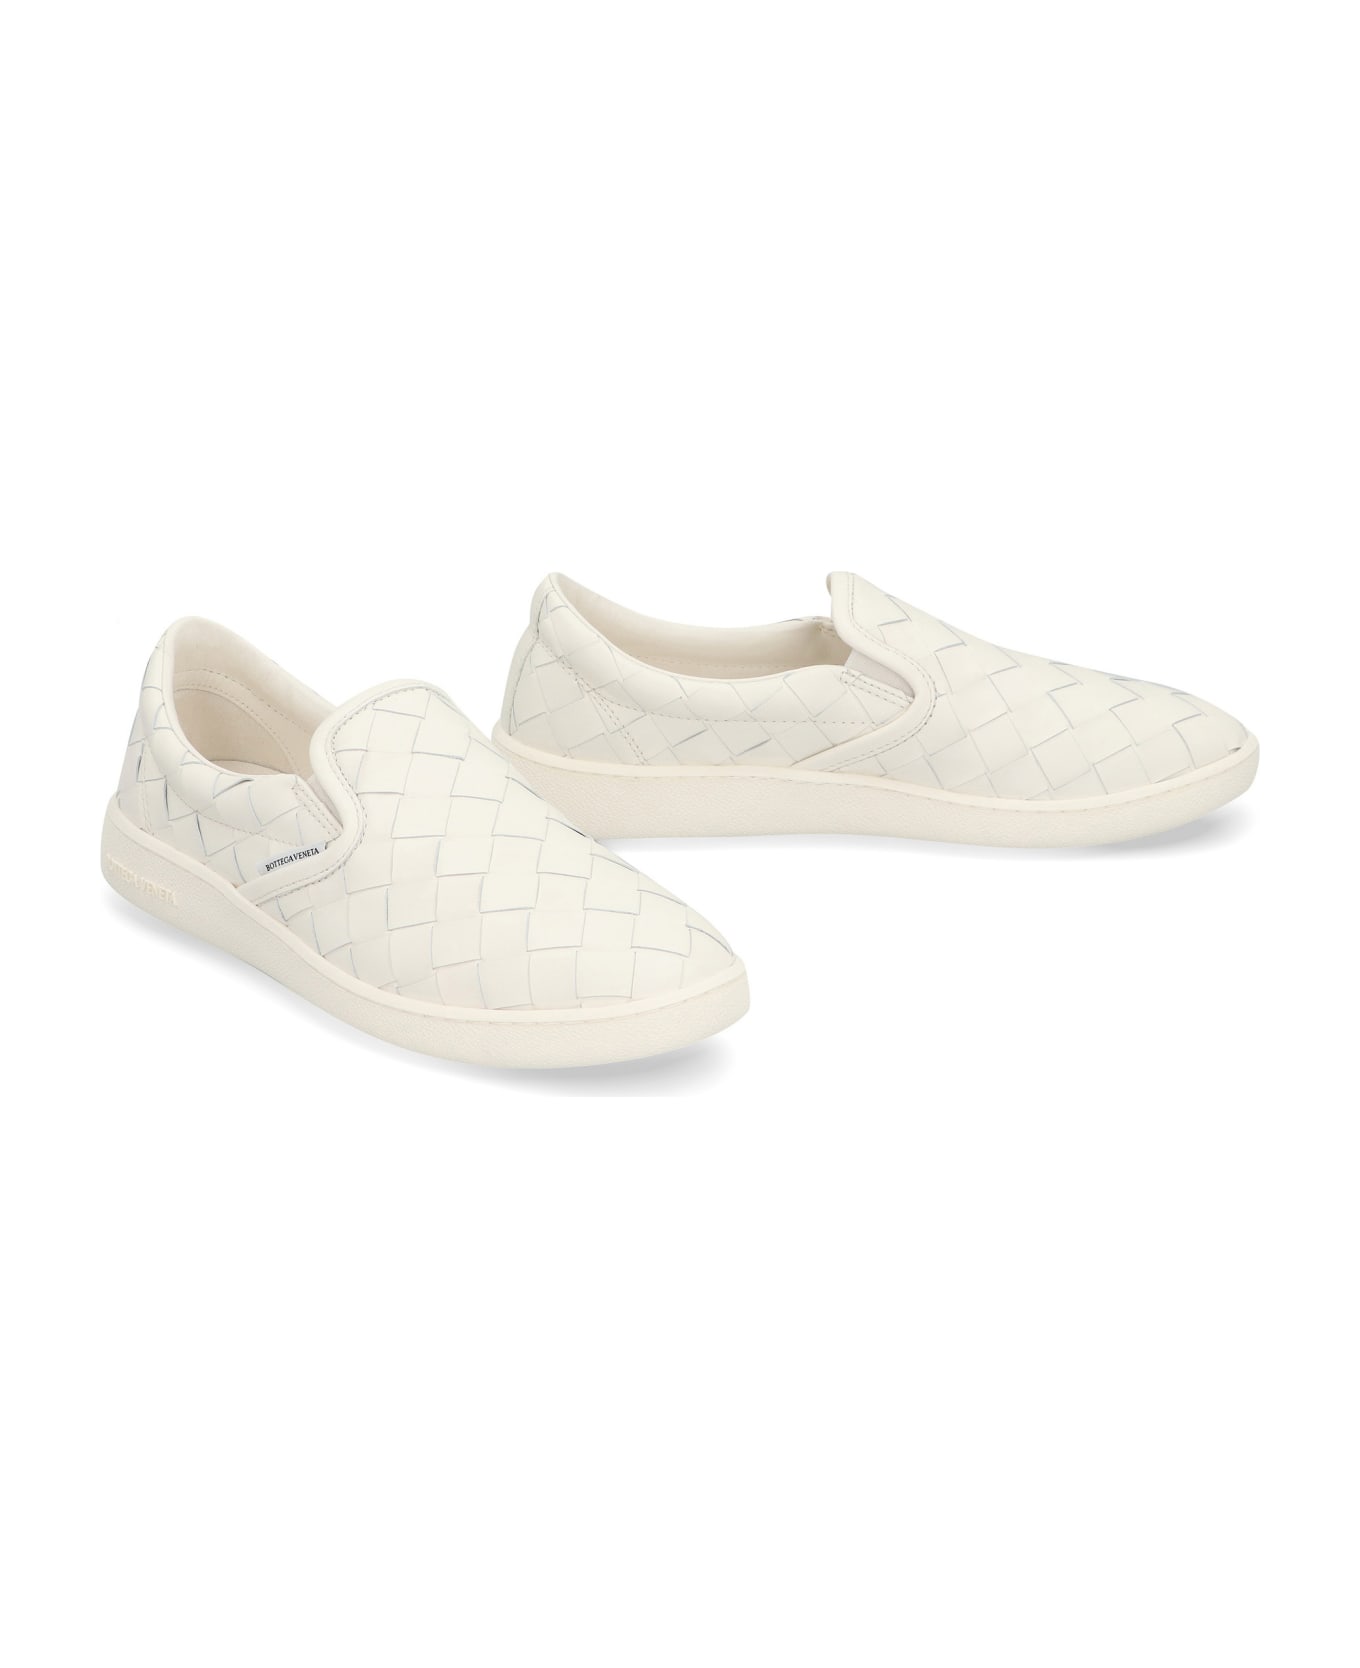 Bottega Veneta Sawyer Leather Sneakers - White スニーカー